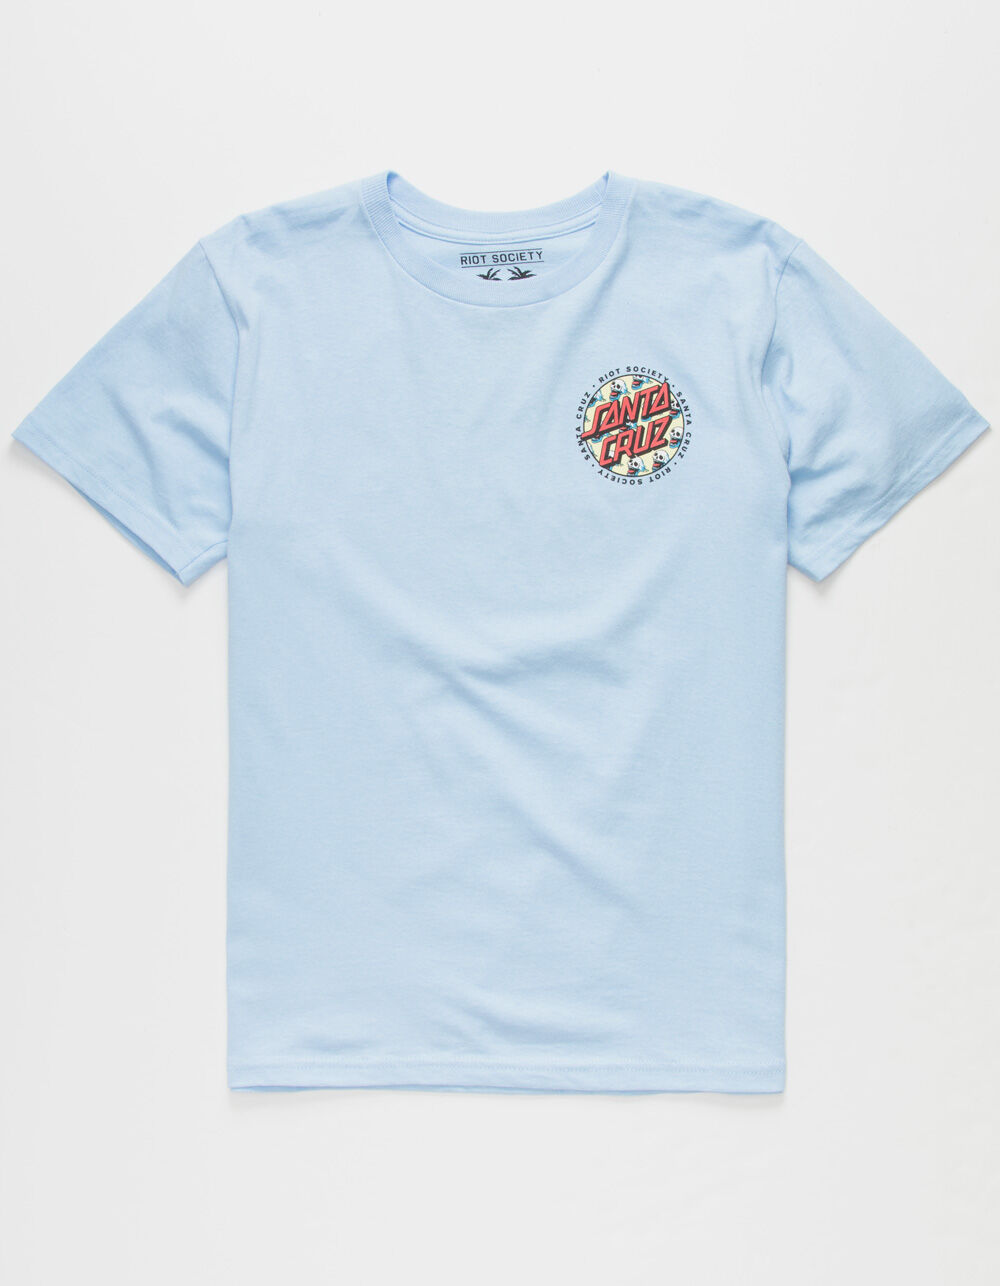 RIOT SOCIETY x Santa Cruz Skull Dot Boys T-Shirt - LIGHT BLUE | Tillys